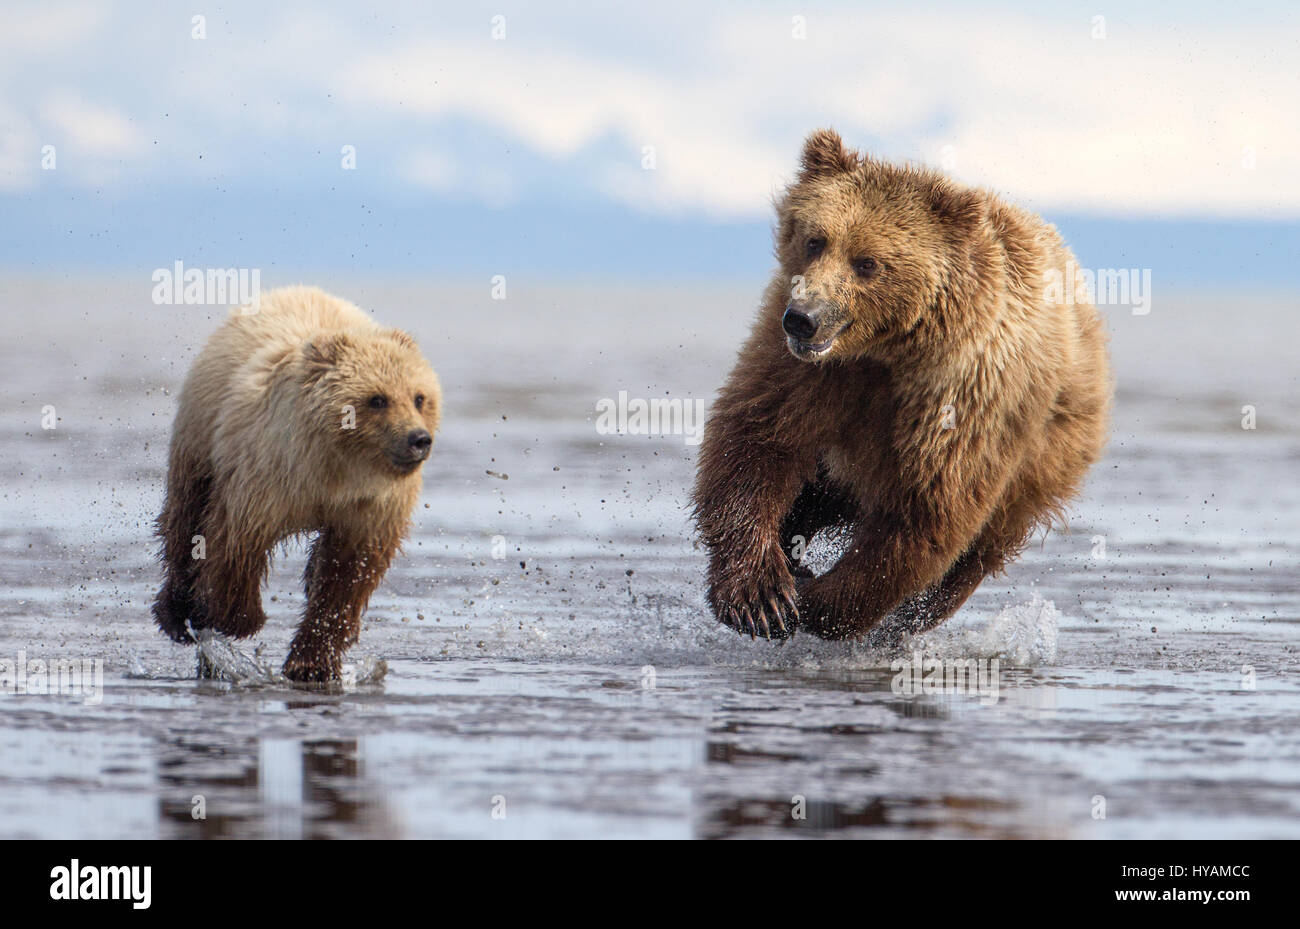 LAKE CLARKE, ALASKA: A BEARHUG sah noch nie so High-Speed, als diese Aufnahme eines 400-Pfund-Mutter-Bären zu seinen furchtlosen Baby gelaufen, so dass das paar liebevoll umarmen können. Weitere herzerwärmende Bilder zeigen zwei niedliche jungen Ringen, racing einander und die Jagd nach Muscheln. Kanadische Natur-Fotograf Marc Latremouille (47) reiste zum Alaskas Lake Clarke National Park zu fotografieren die Braunbären, die dort zu machen. Stockfoto